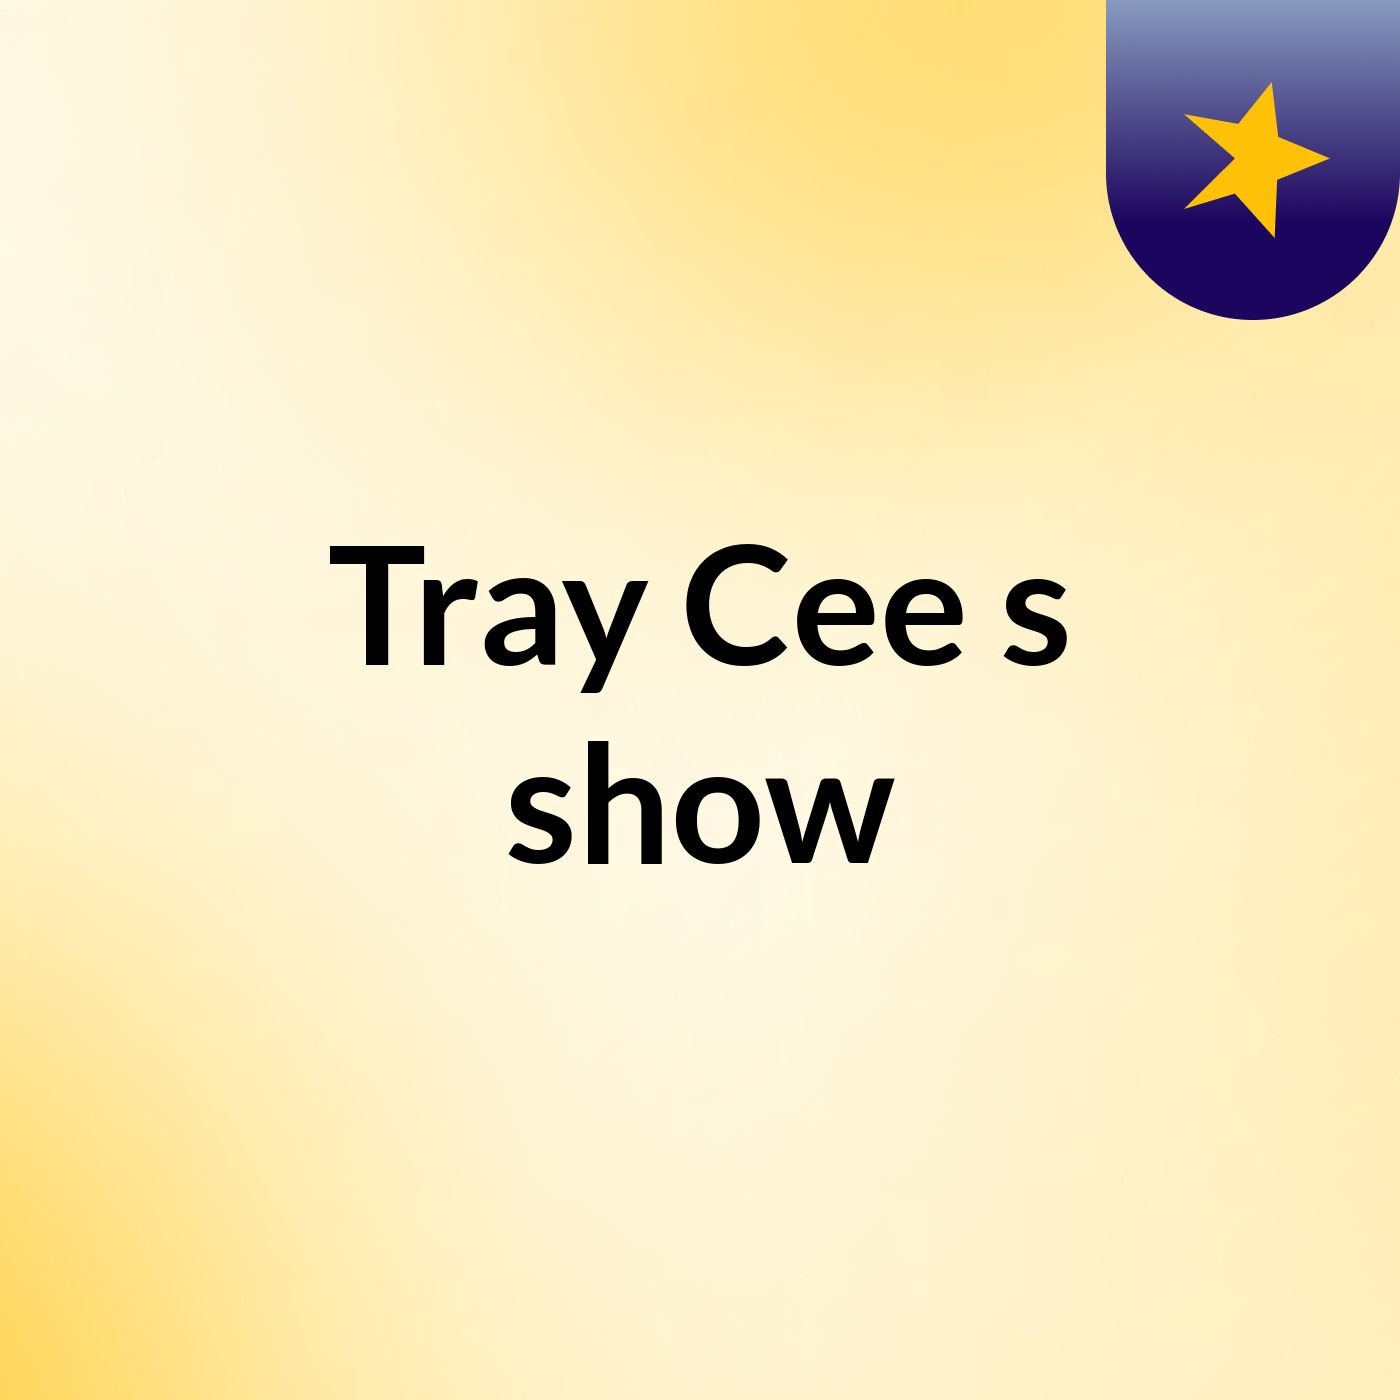 Tray Cee's show